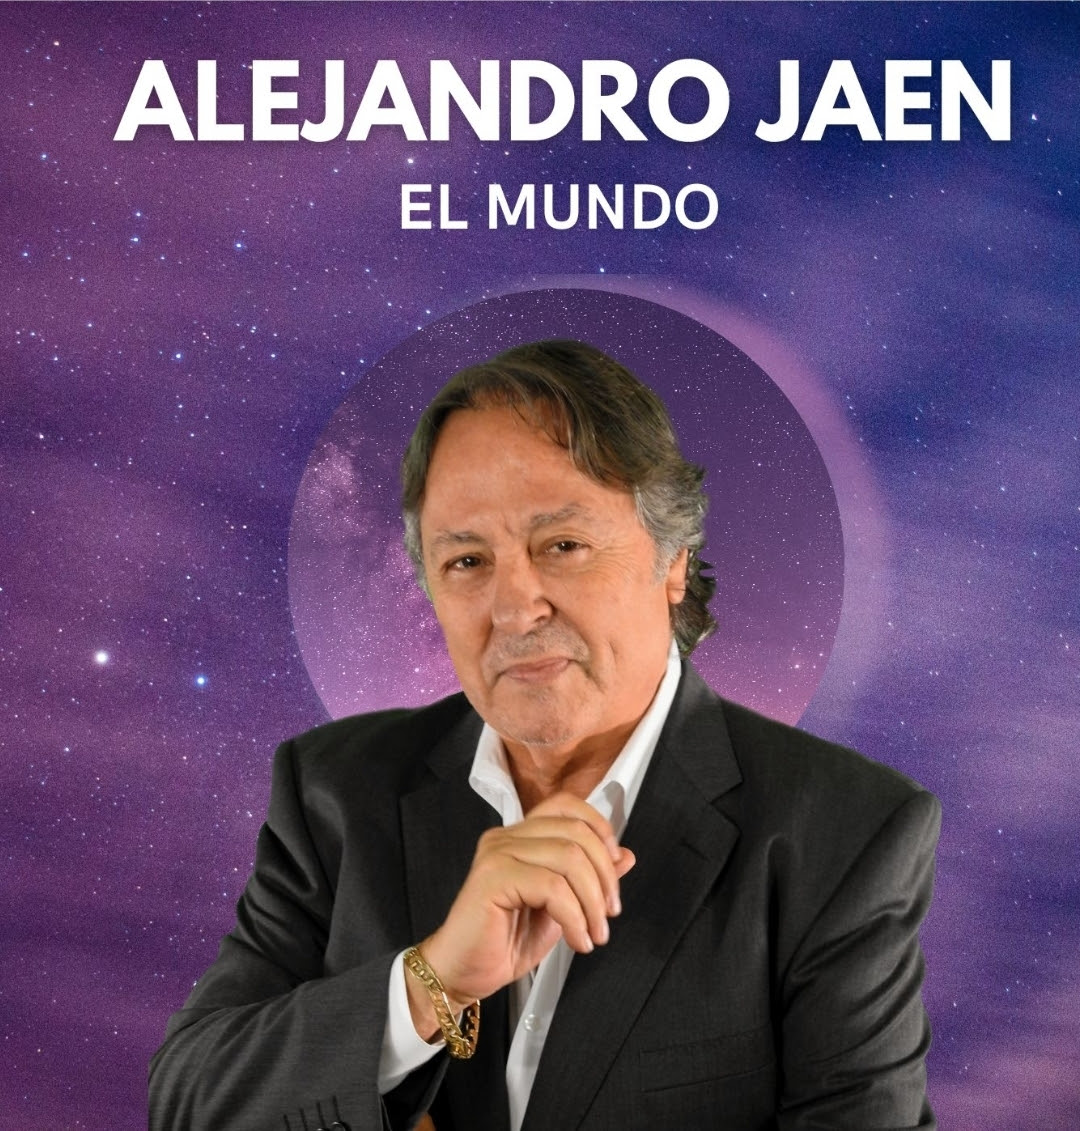  Alejandro Jaén presenta nueva producción "El Mundo”